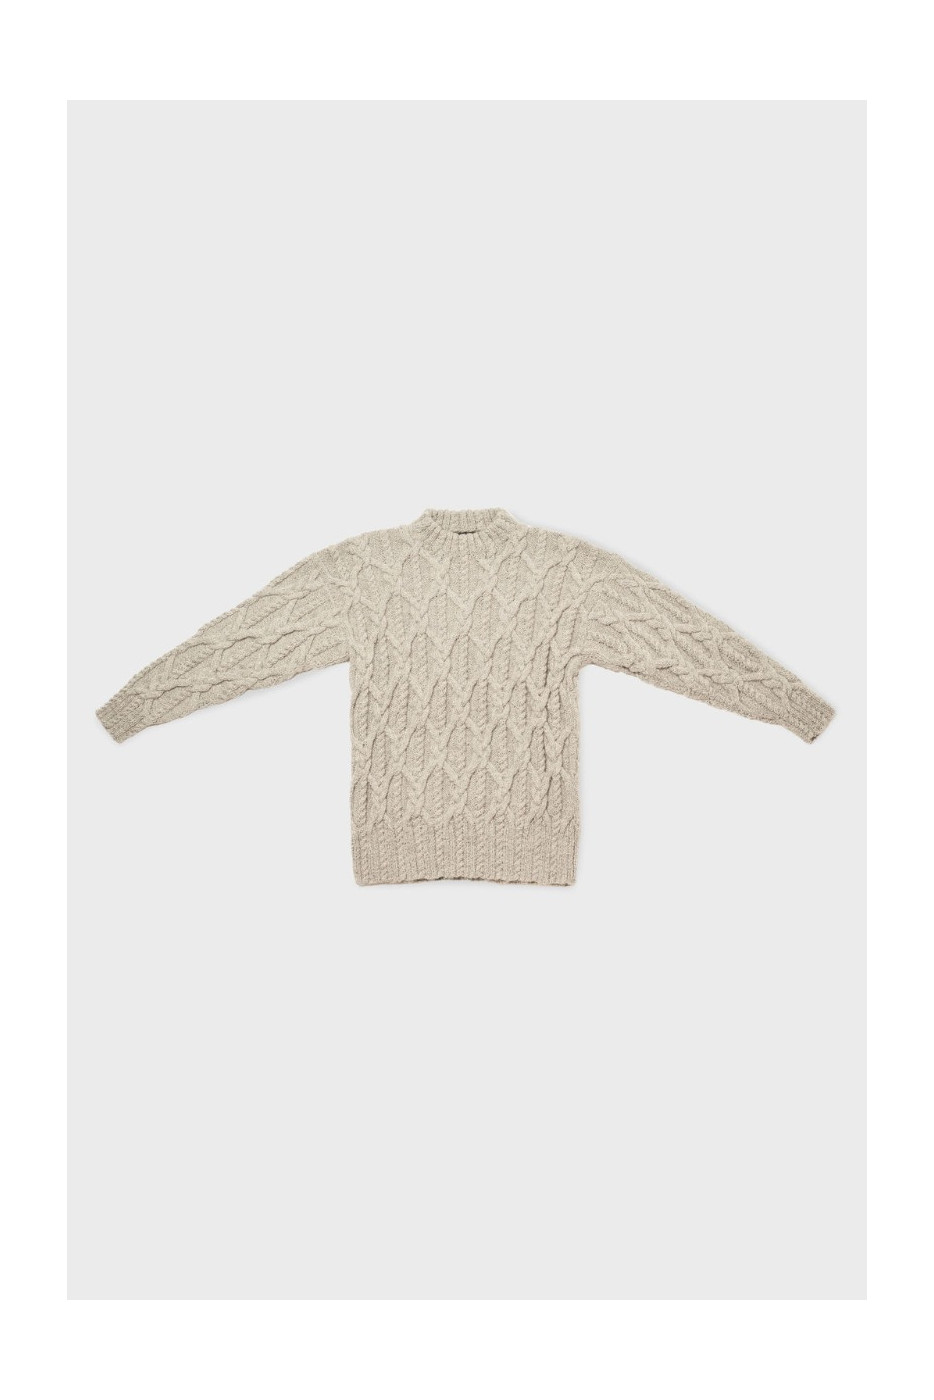 Wild Cable Sweater | Womens Knitwear NZ | Womens Knitwear| BONZ